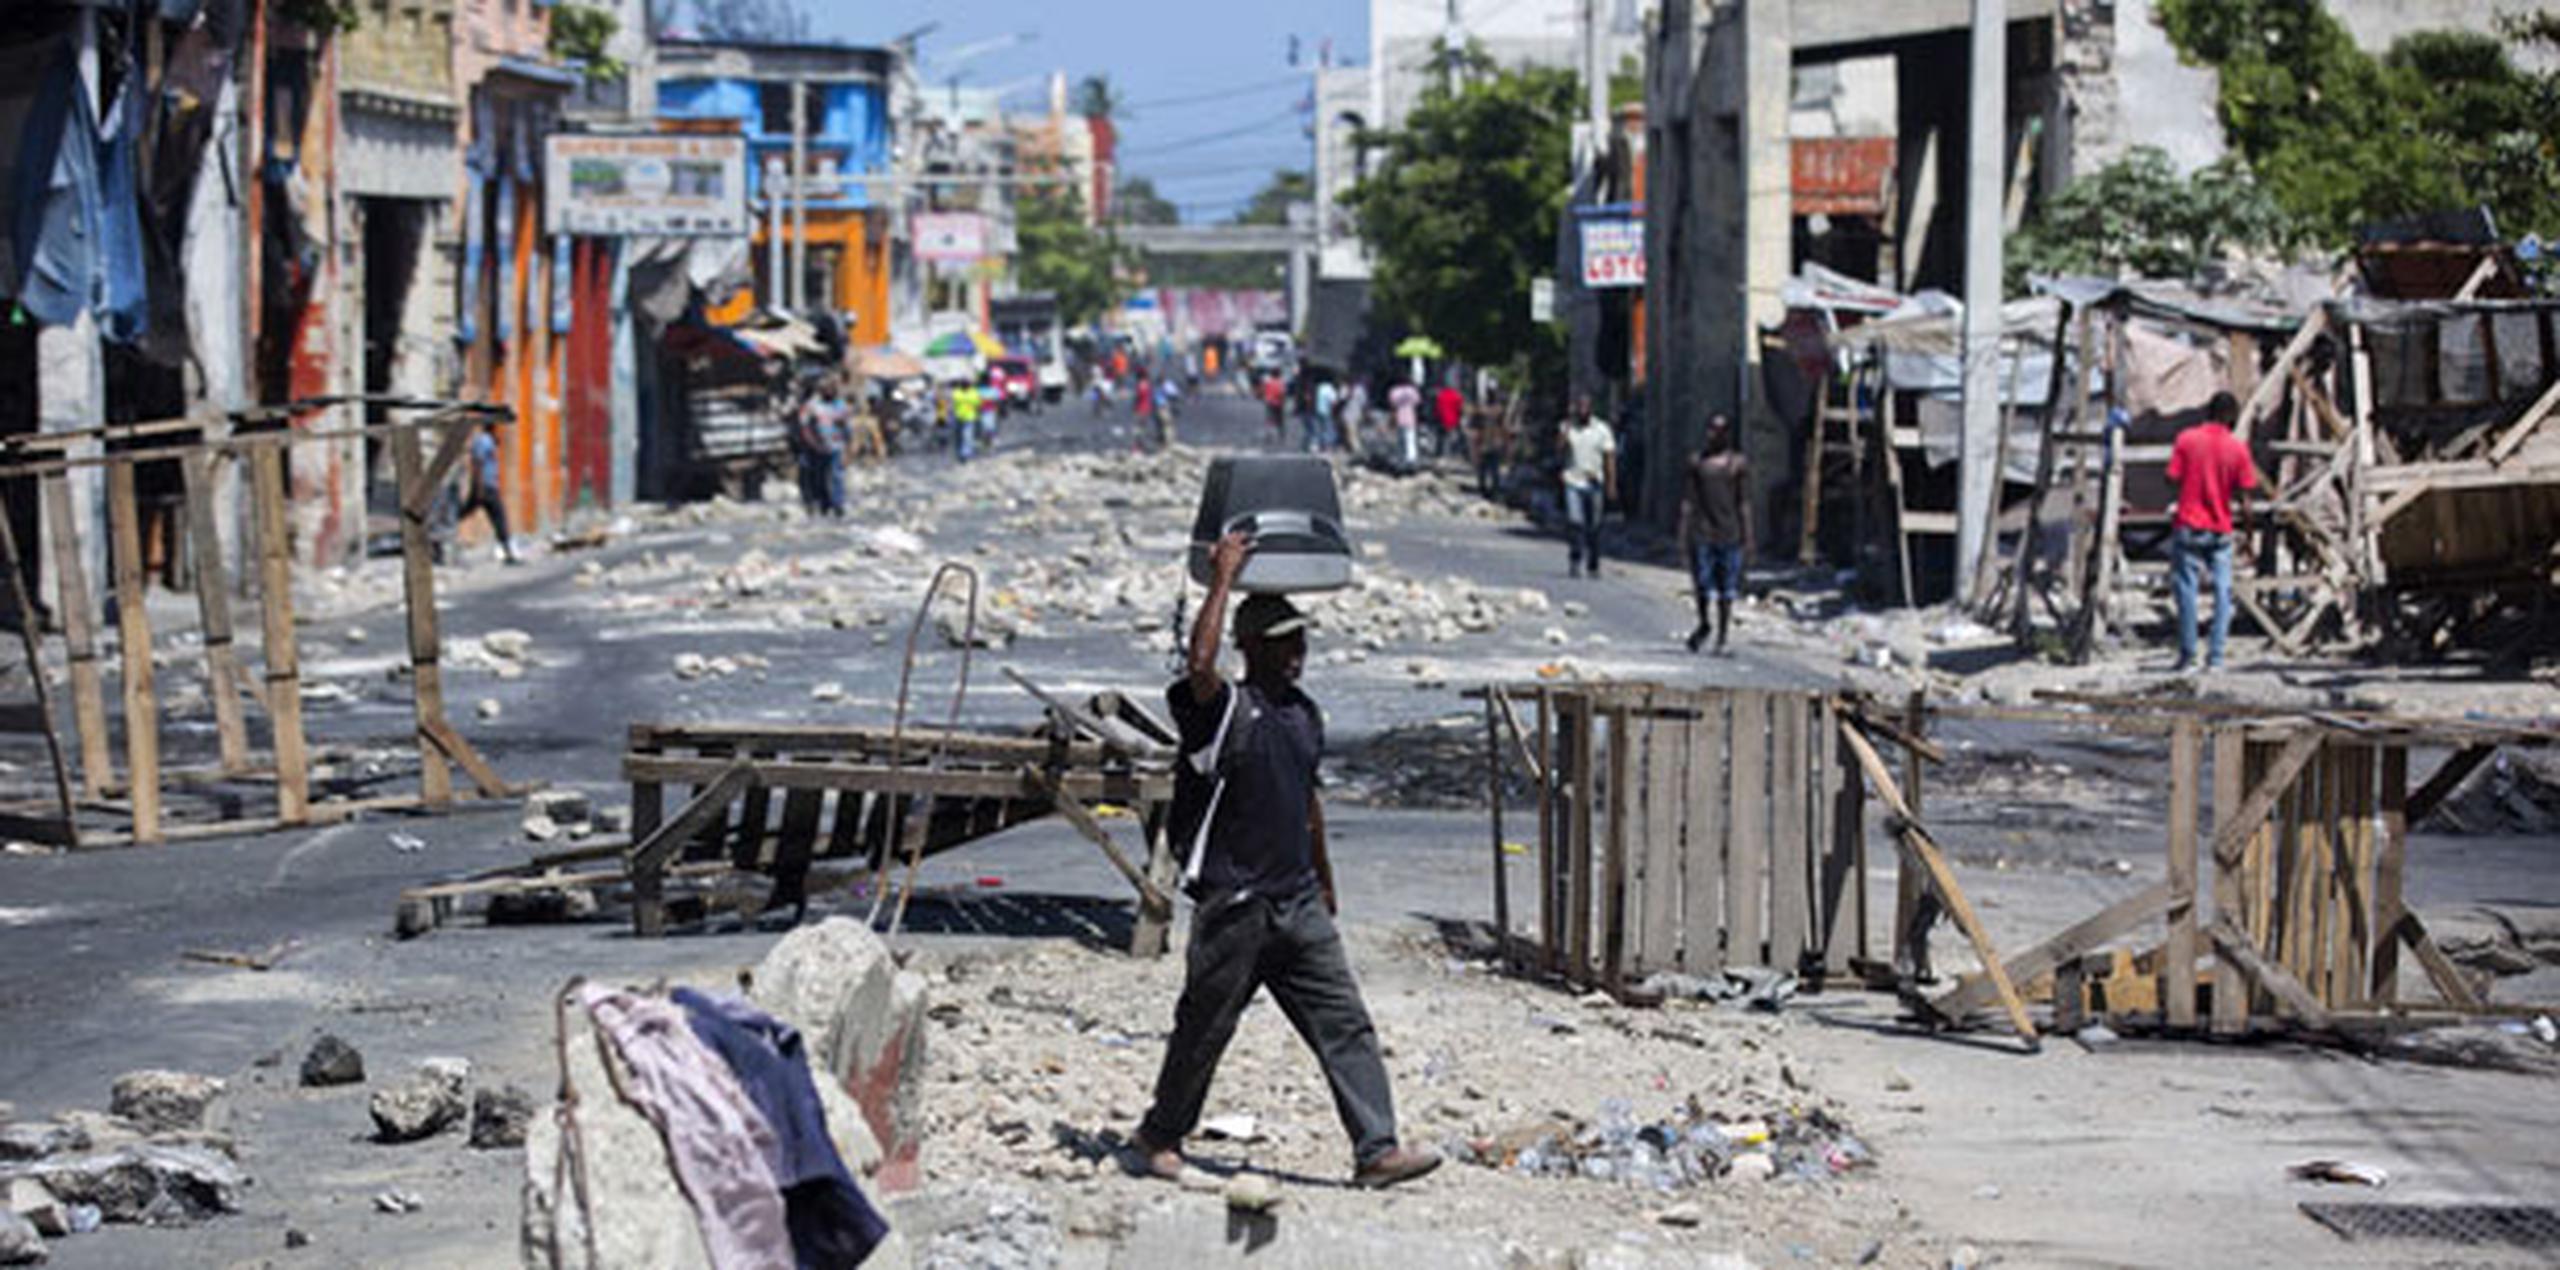 En las protestas de la semana anterior, cientos de personas bloquearon las calles con barricadas y paralizaron Puerto Príncipe y otras localidades desde la tarde del 6 de julio, luego de que el gobierno anunció que al día siguiente incrementaría los precios de la gasolina, diésel y queroseno. (AP)